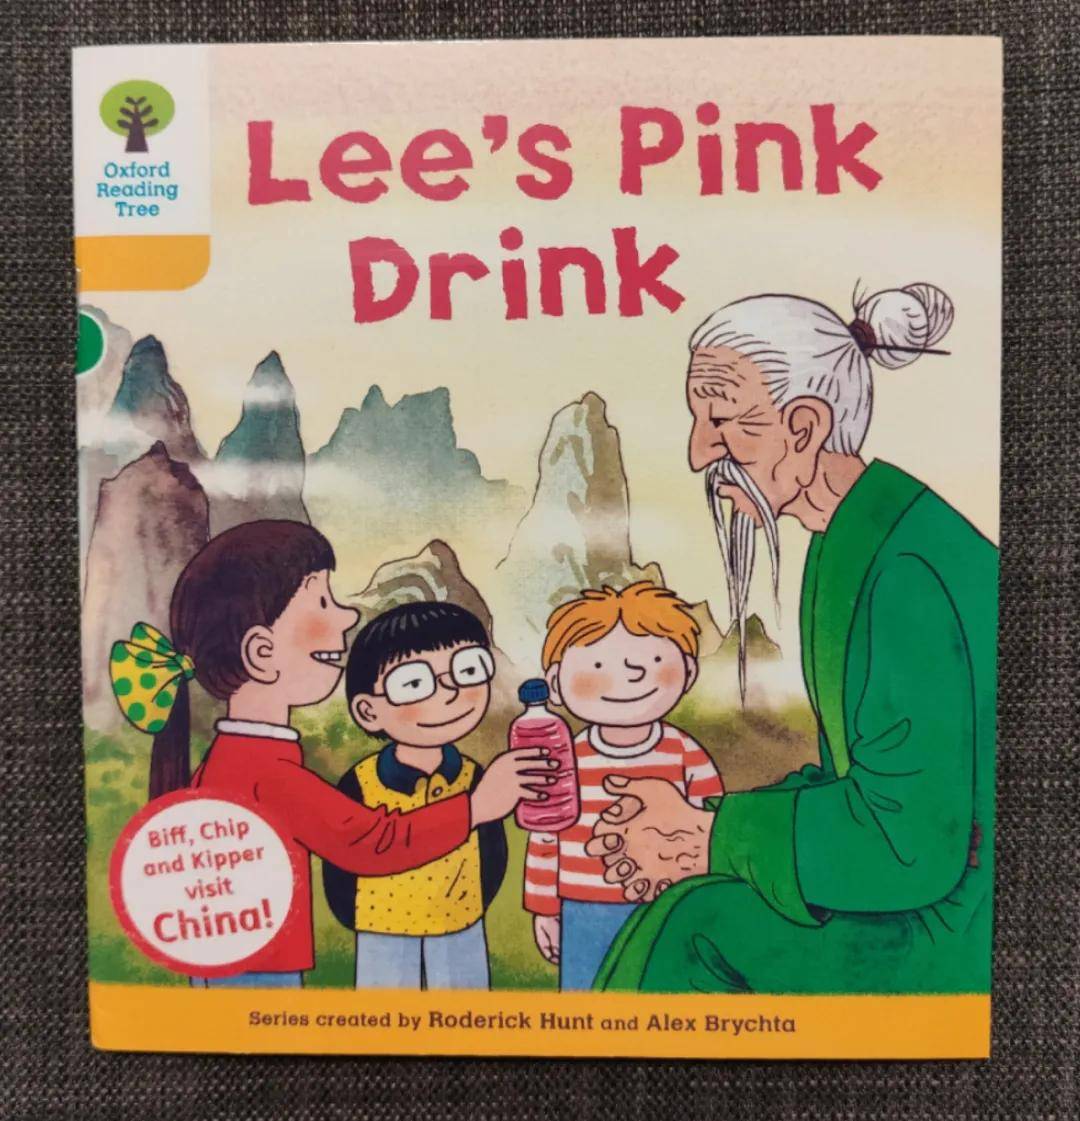 伴读 牛津树【中国篇56】Lee's Pink Drink_Biff